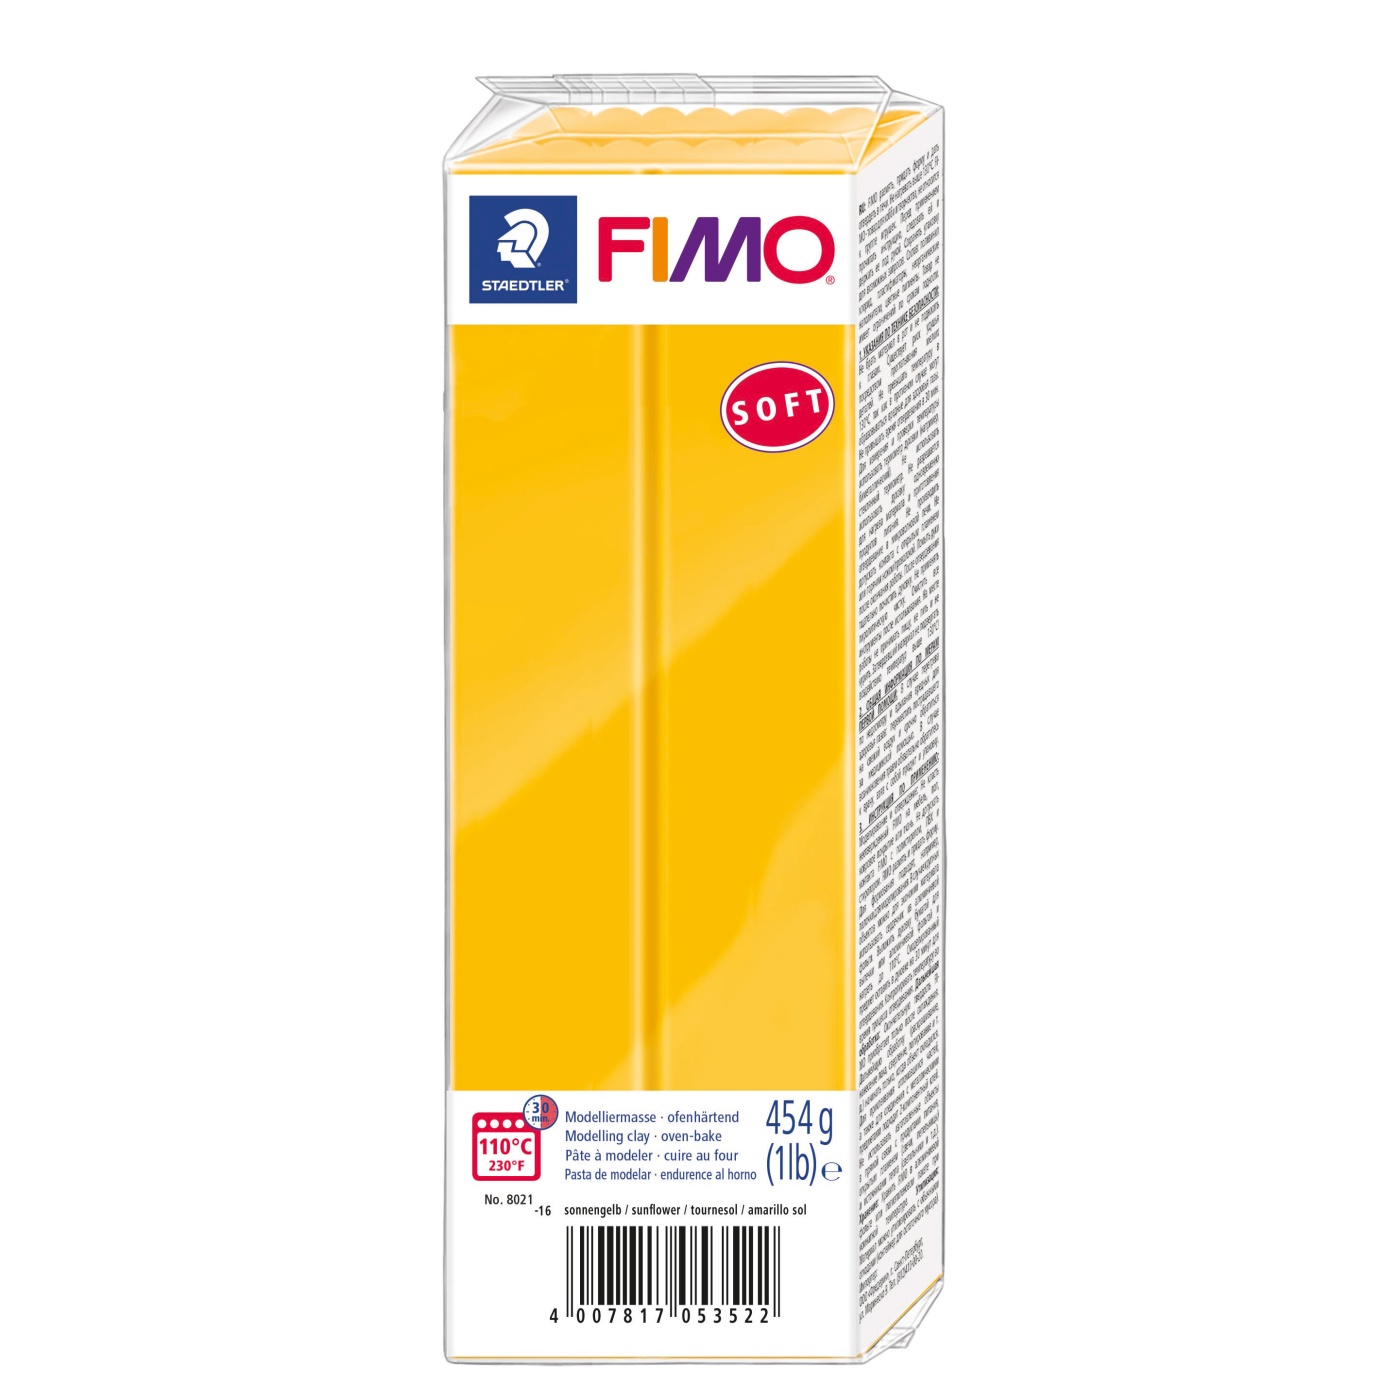 FIMO Soft 454g (8021-9) black